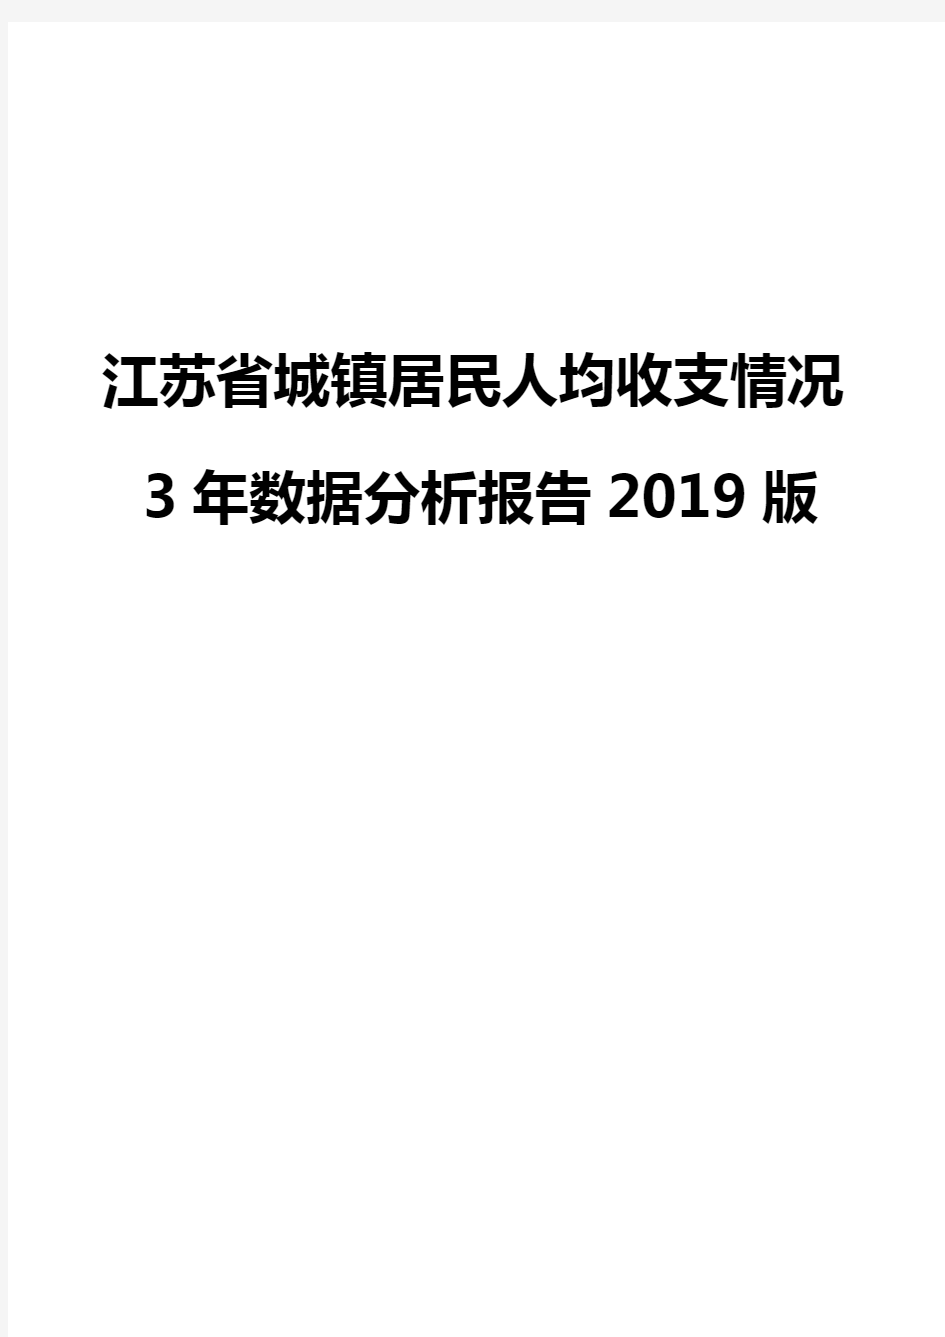 江苏省城镇居民人均收支情况3年数据分析报告2019版